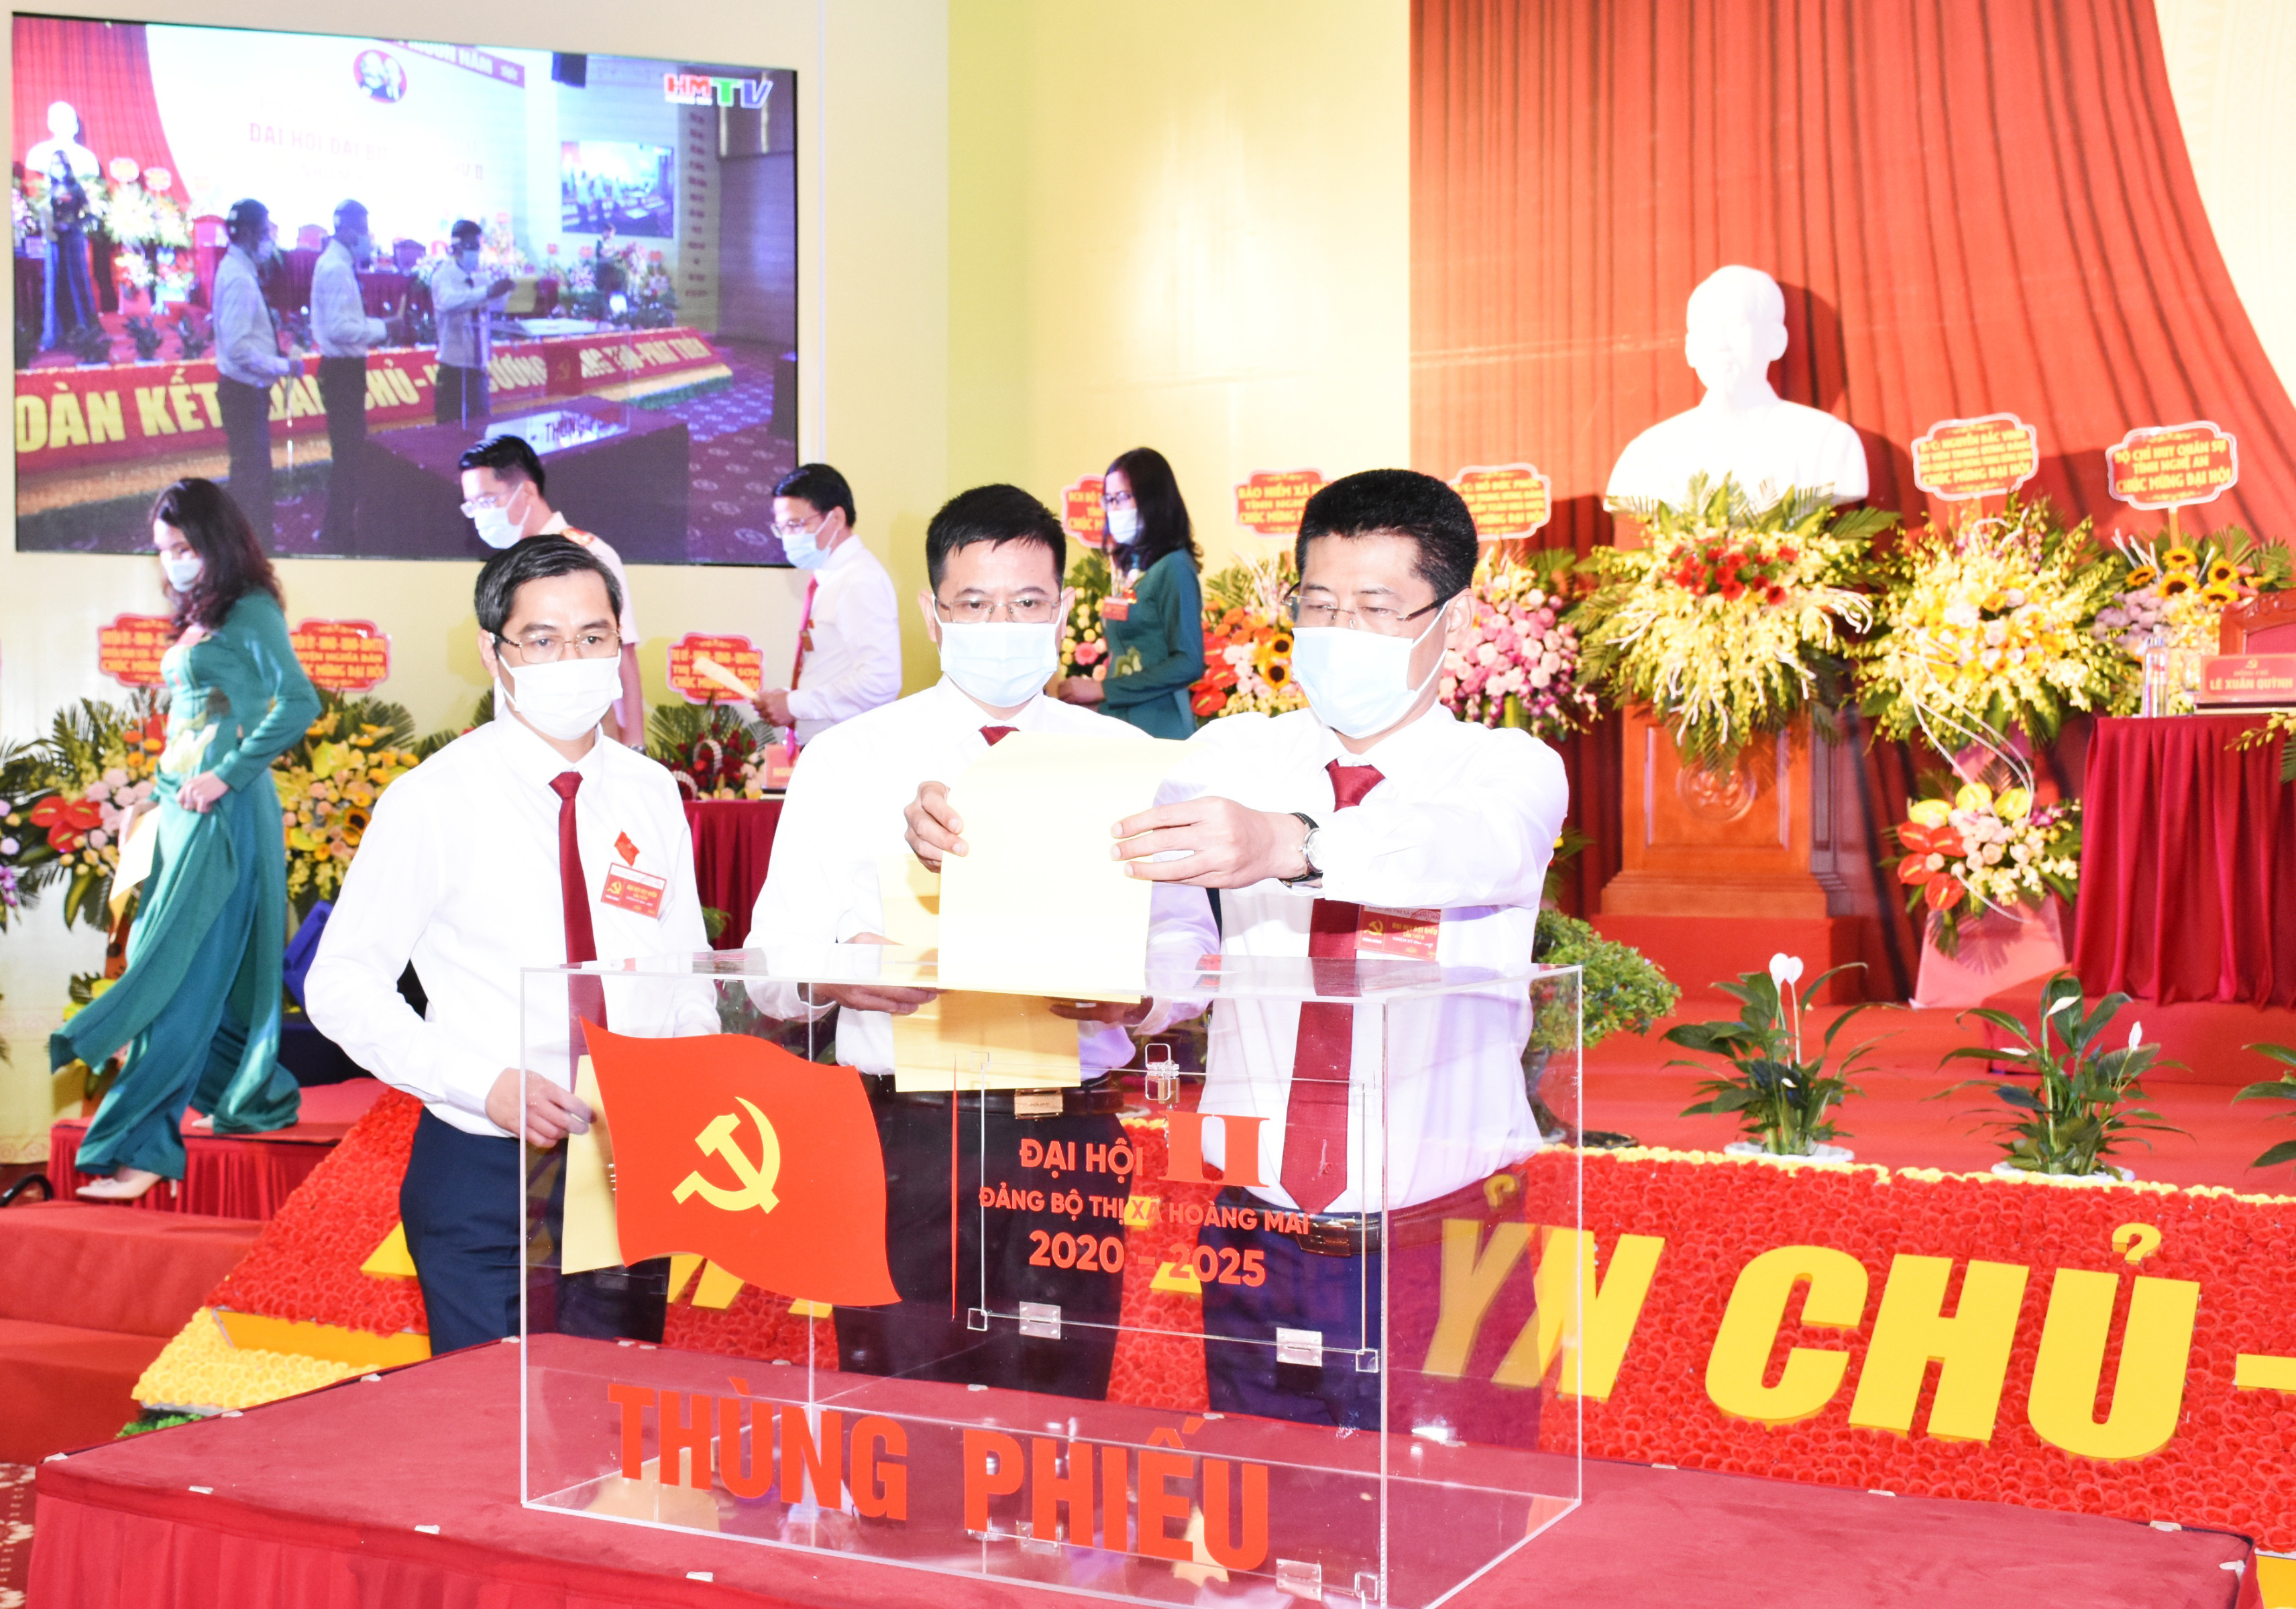 Các đại biểu bỏ phiếu bầu Ban Chấp hành Đảng bộ thị xã Hoàng Mai lần thứ II, nhiệm kỳ 2020-2025. Ảnh: Thanh Lê